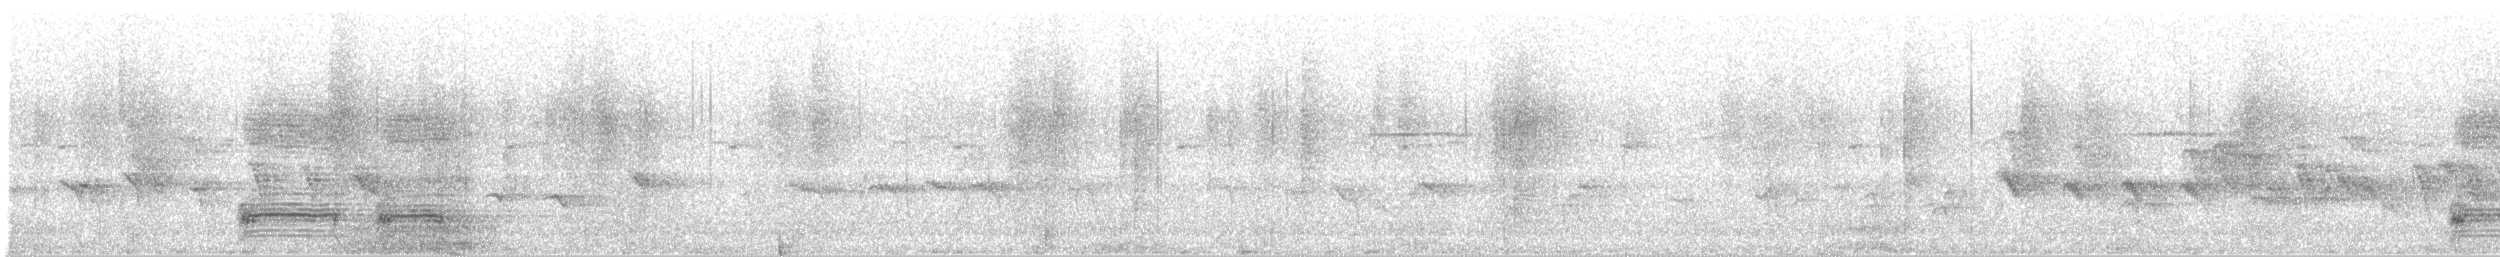 Ak Karınlı Saksağan - ML137956561